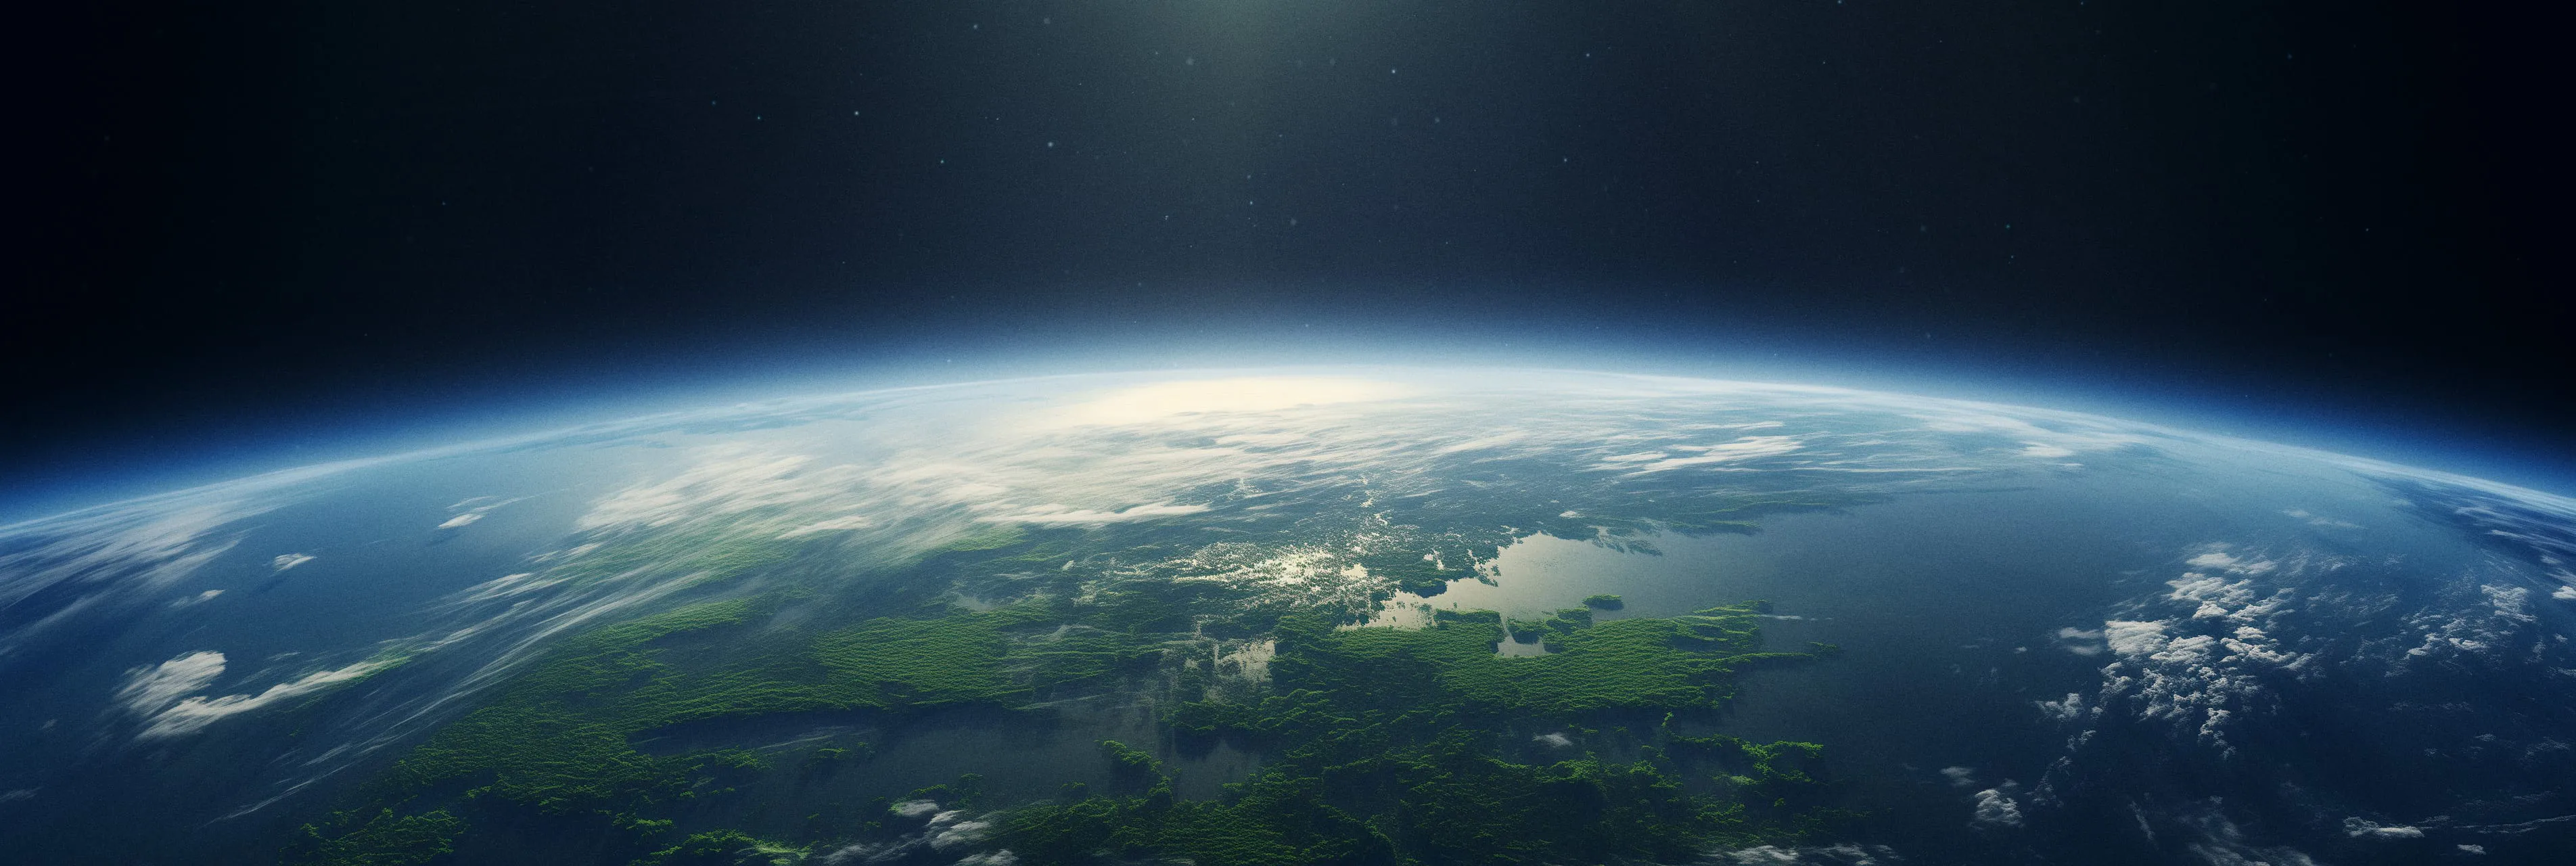 Nachhaltigkeit Erde aus dem Weltall gesehen